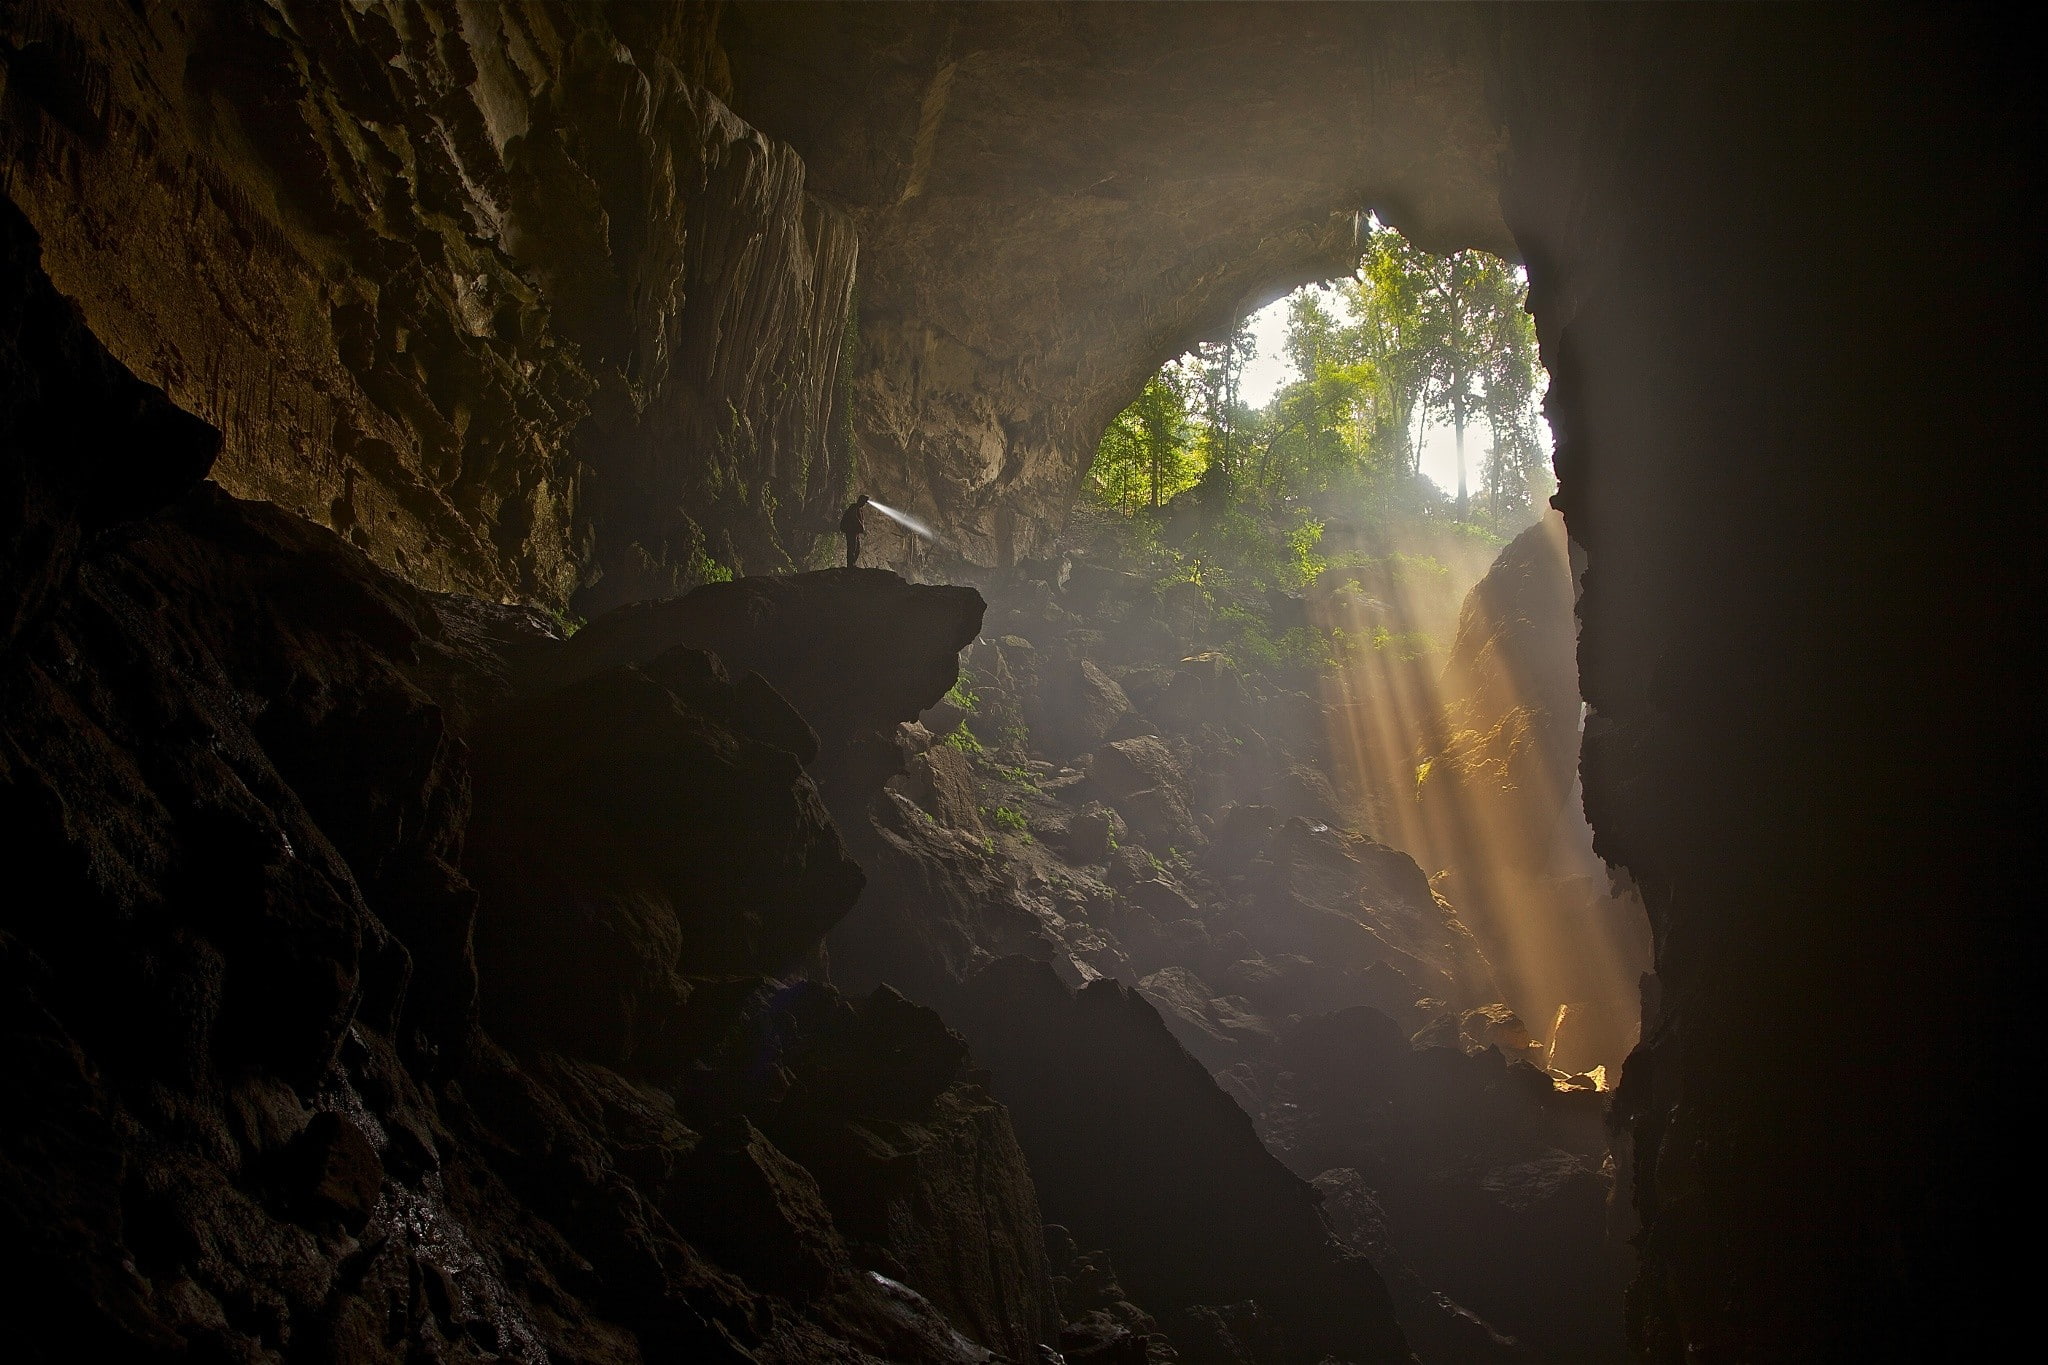 500px, photography, landscape, cave, men, Kaeng Lawa Cave, Thailand